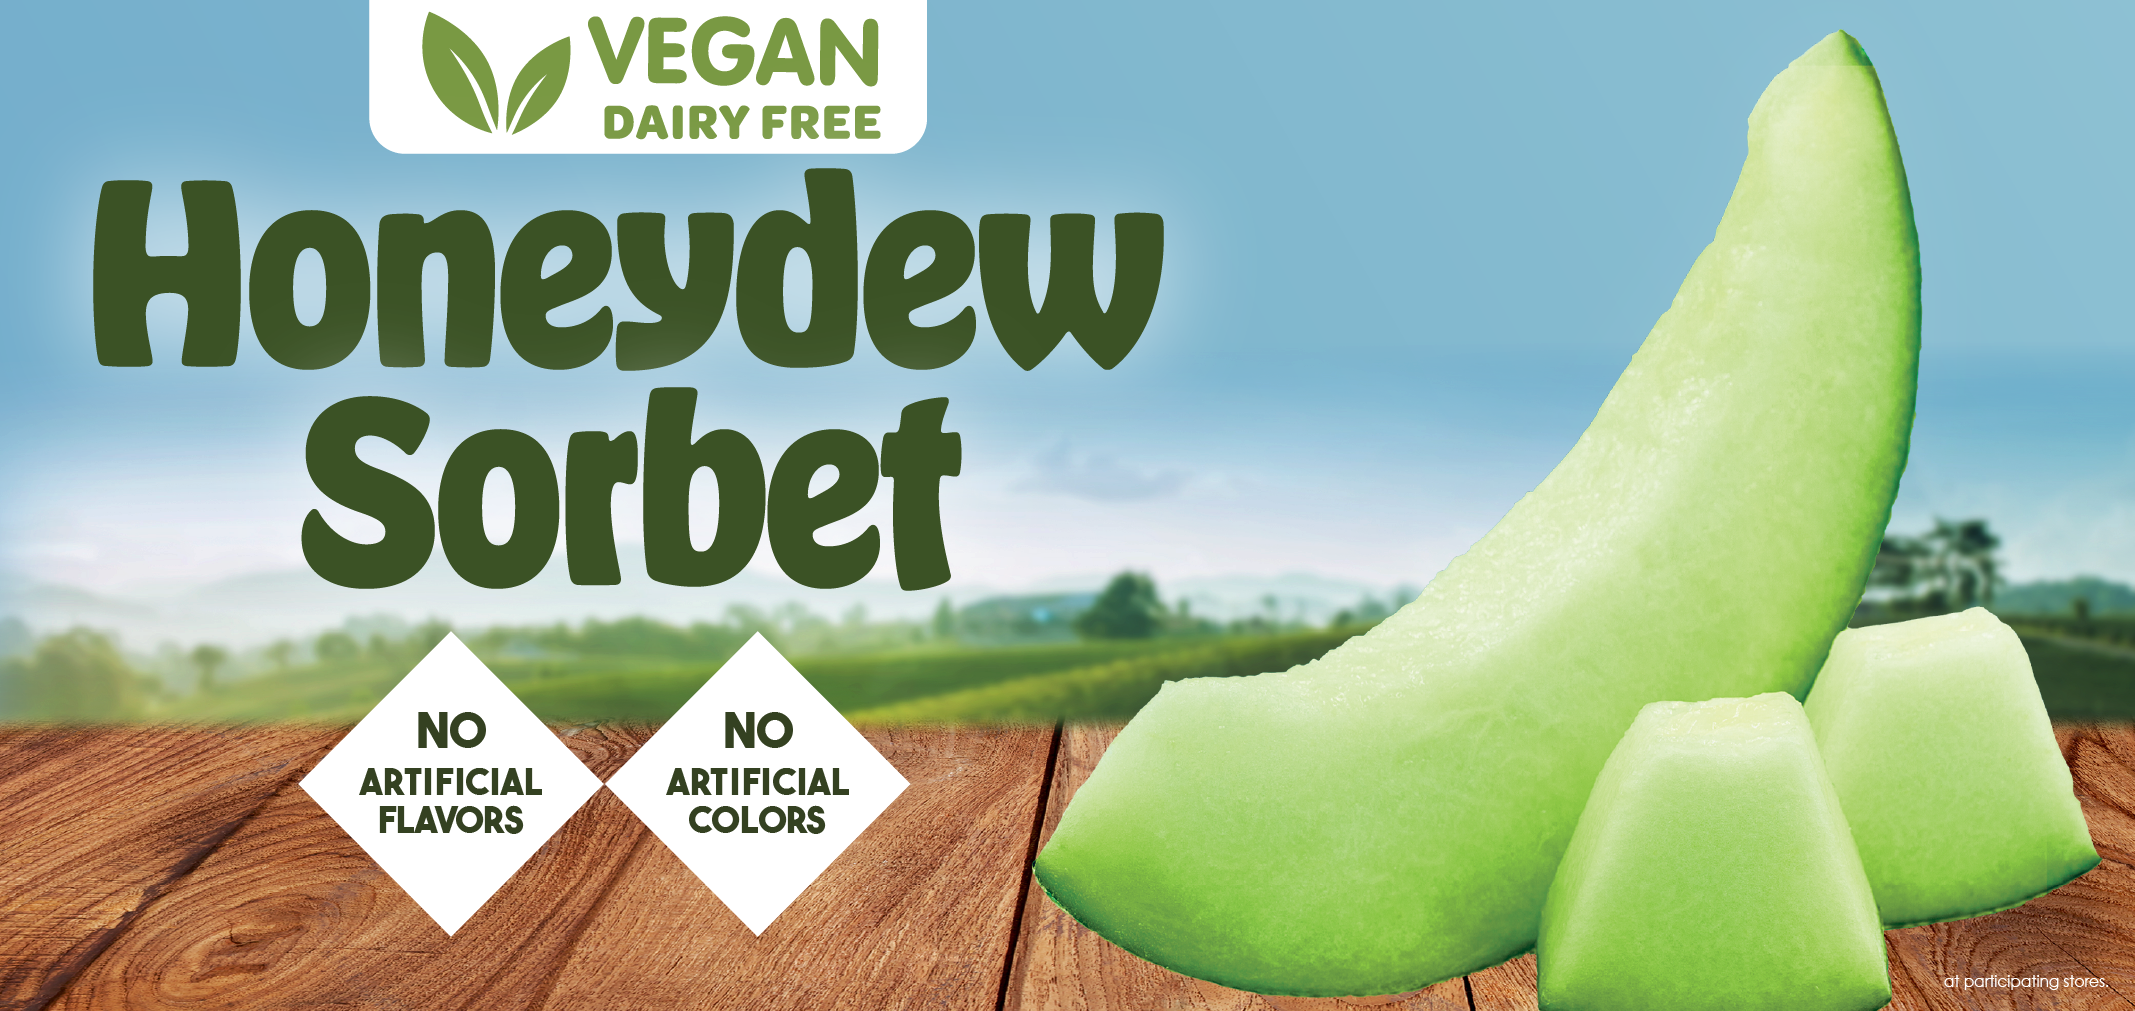 vegan honeydew sorbet label image